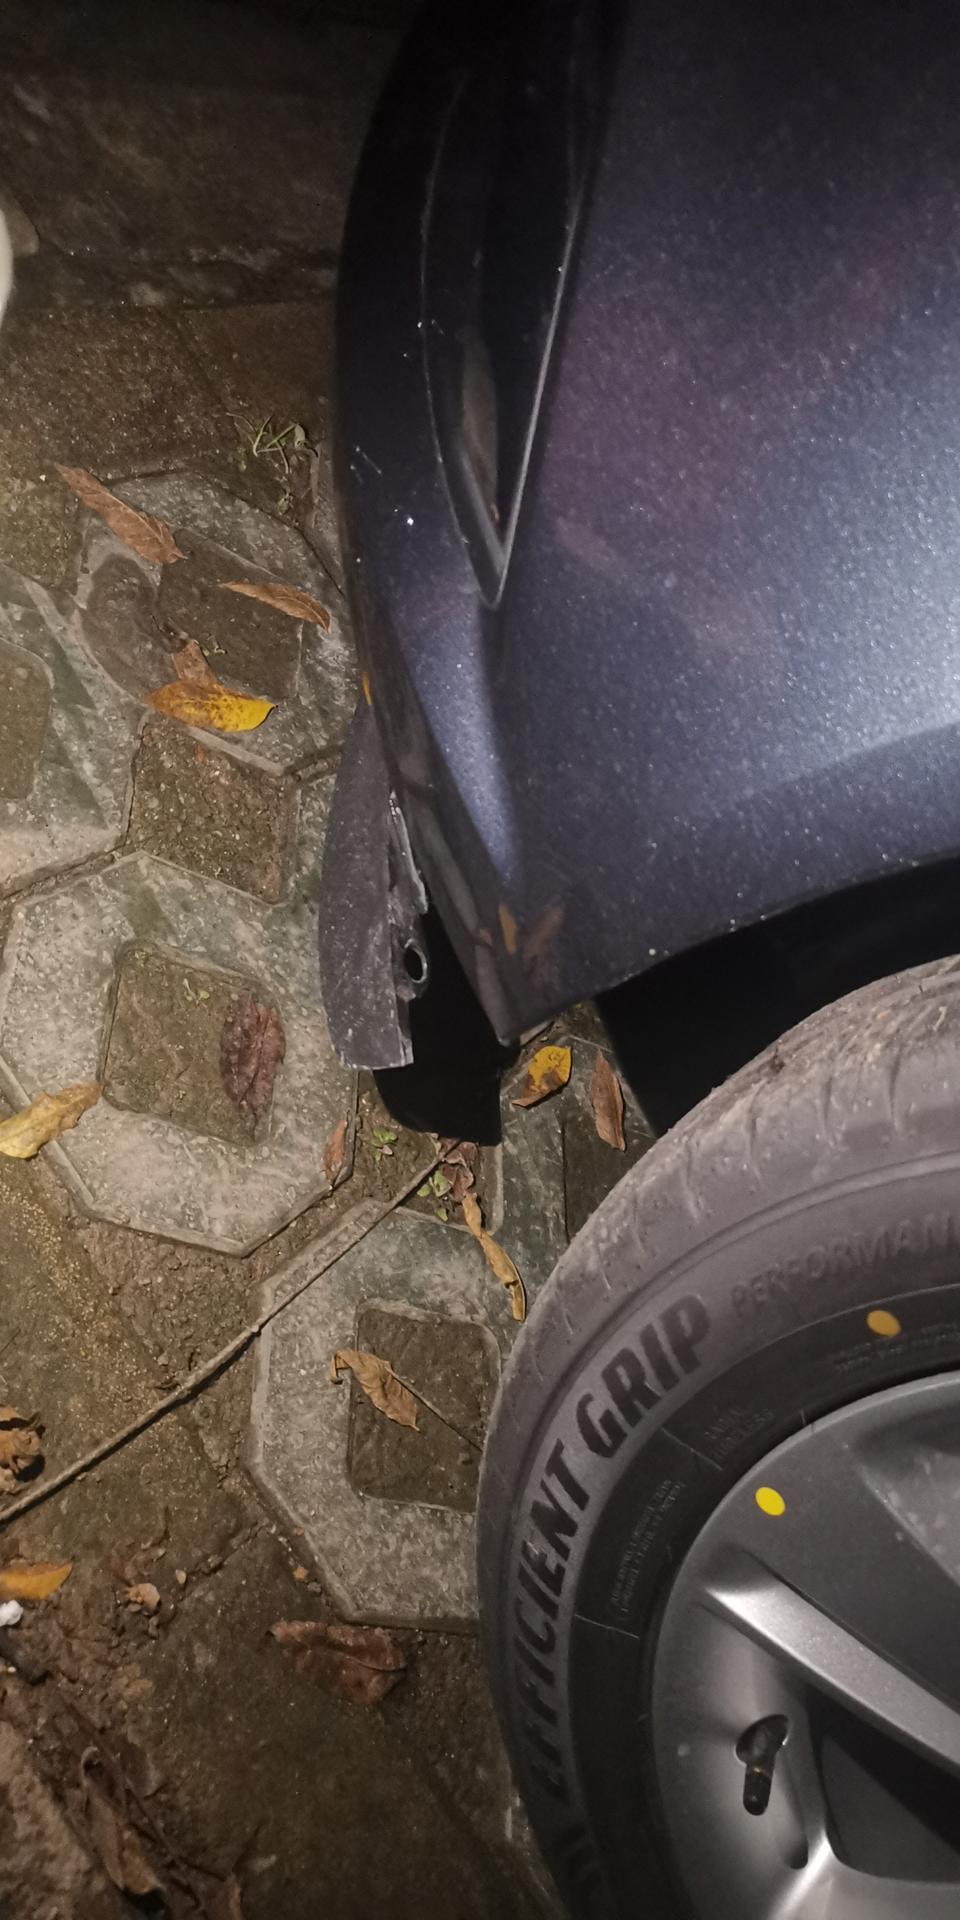 2019款君威，提车新车第一天，停到小区停车位时没注意路沿石边上有个铁桩，把保险杠下方的黑色塑料撞断了，该怎么修最划算。